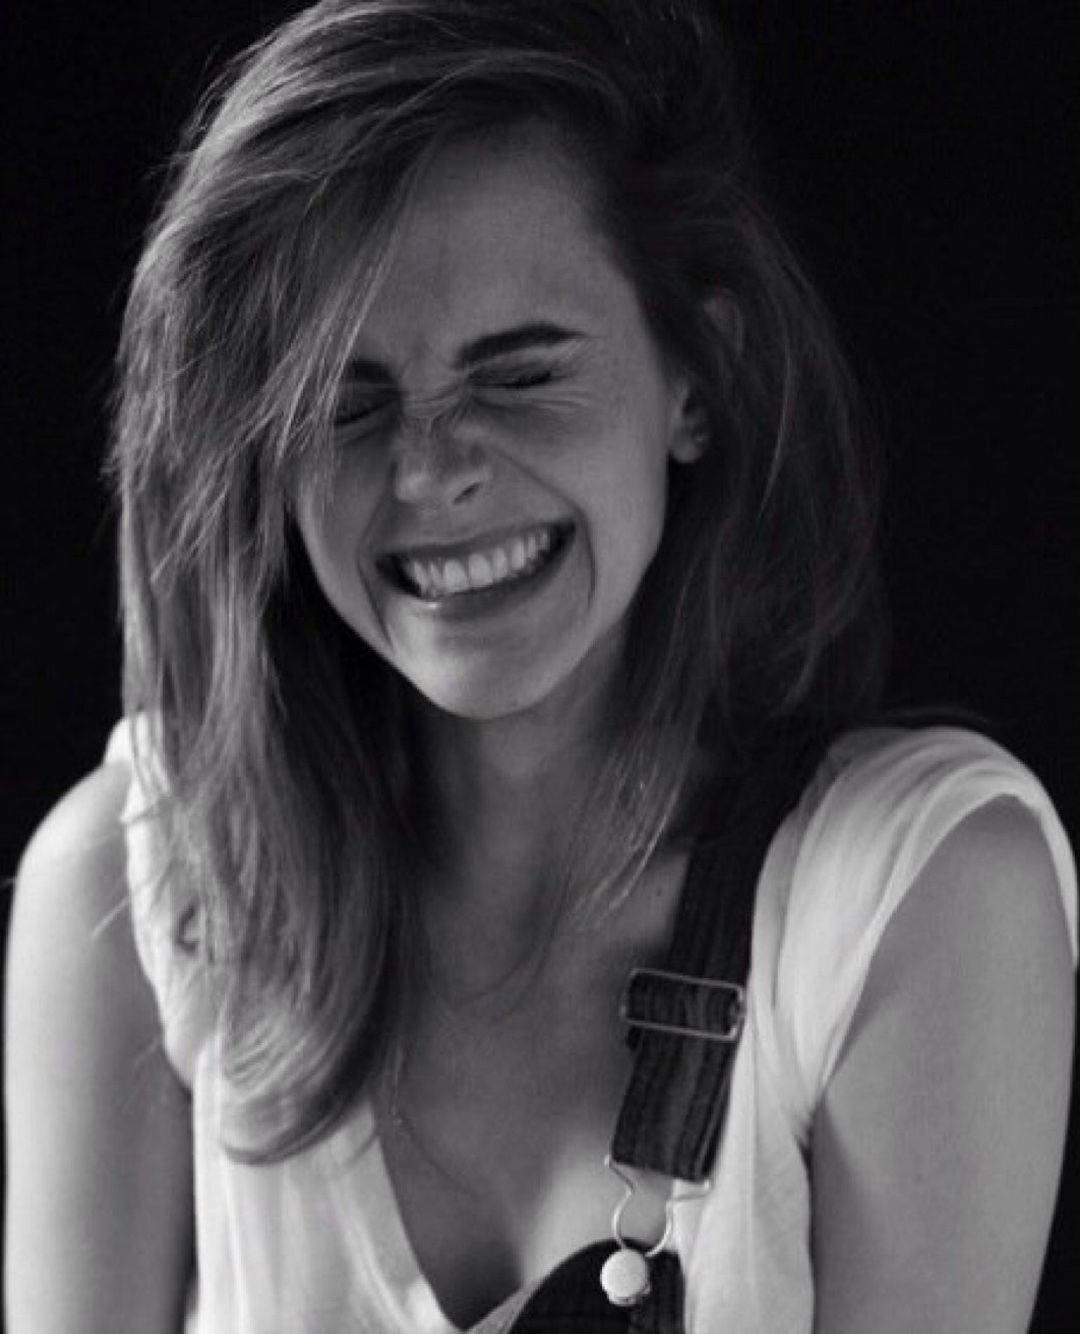 Emma Watson's bright, beautiful smile Wallpaper